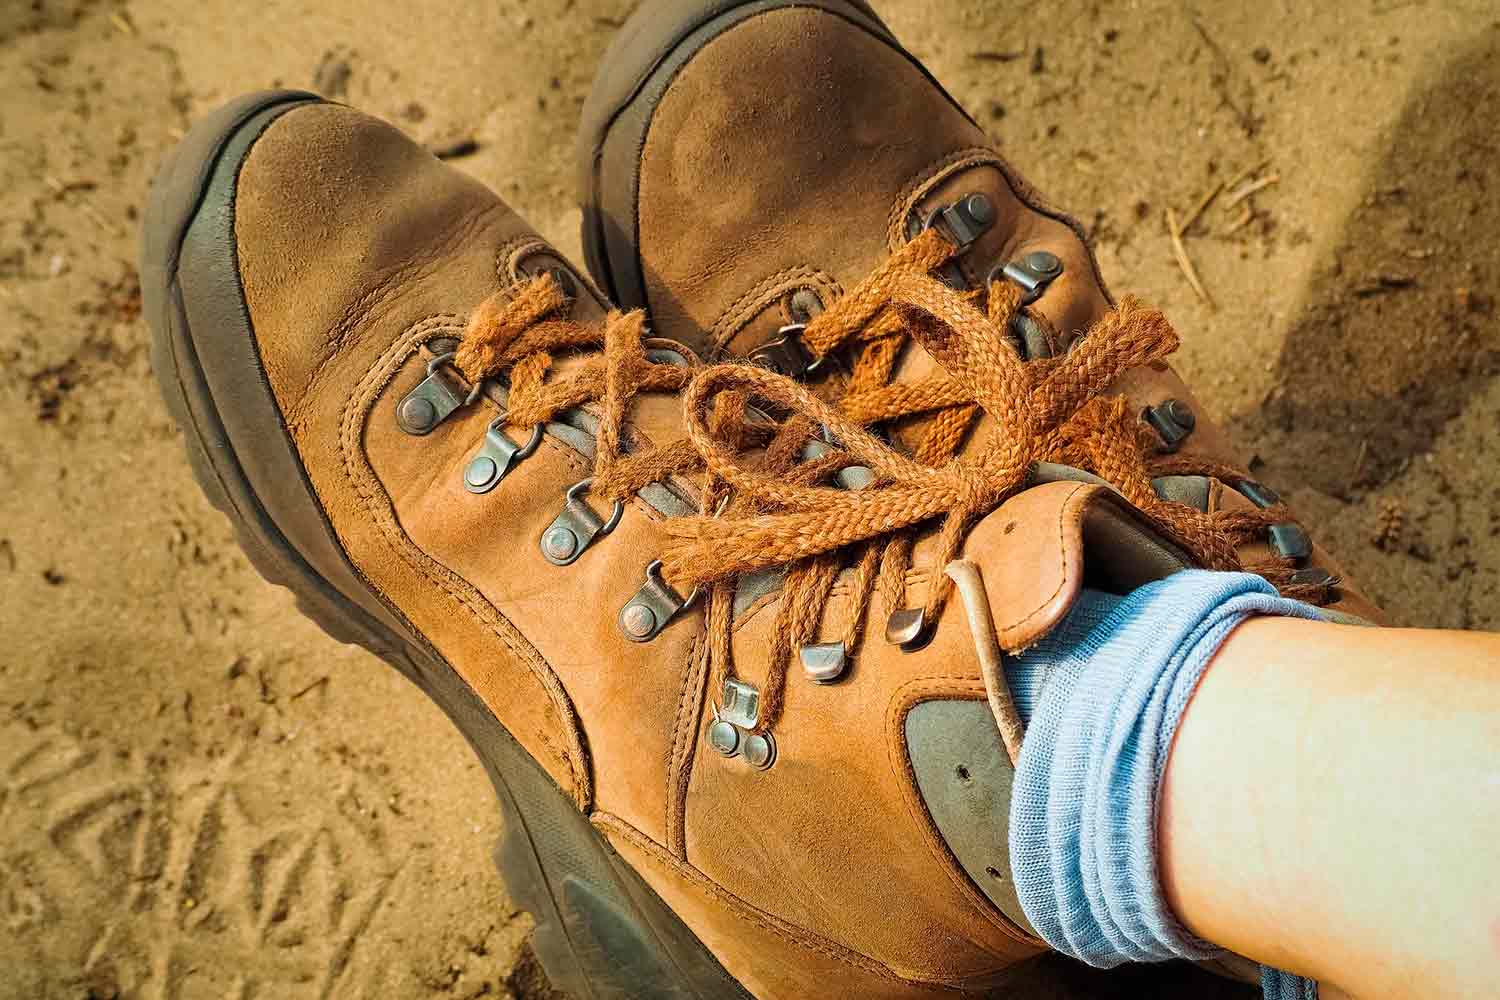 GUGGEN MOUNTAIN Los Hombres Zapatos de Senderismo Botas de Trekking Montanismo Botas de Montana Impermeable con Suela de Vibram Mujer HPM51